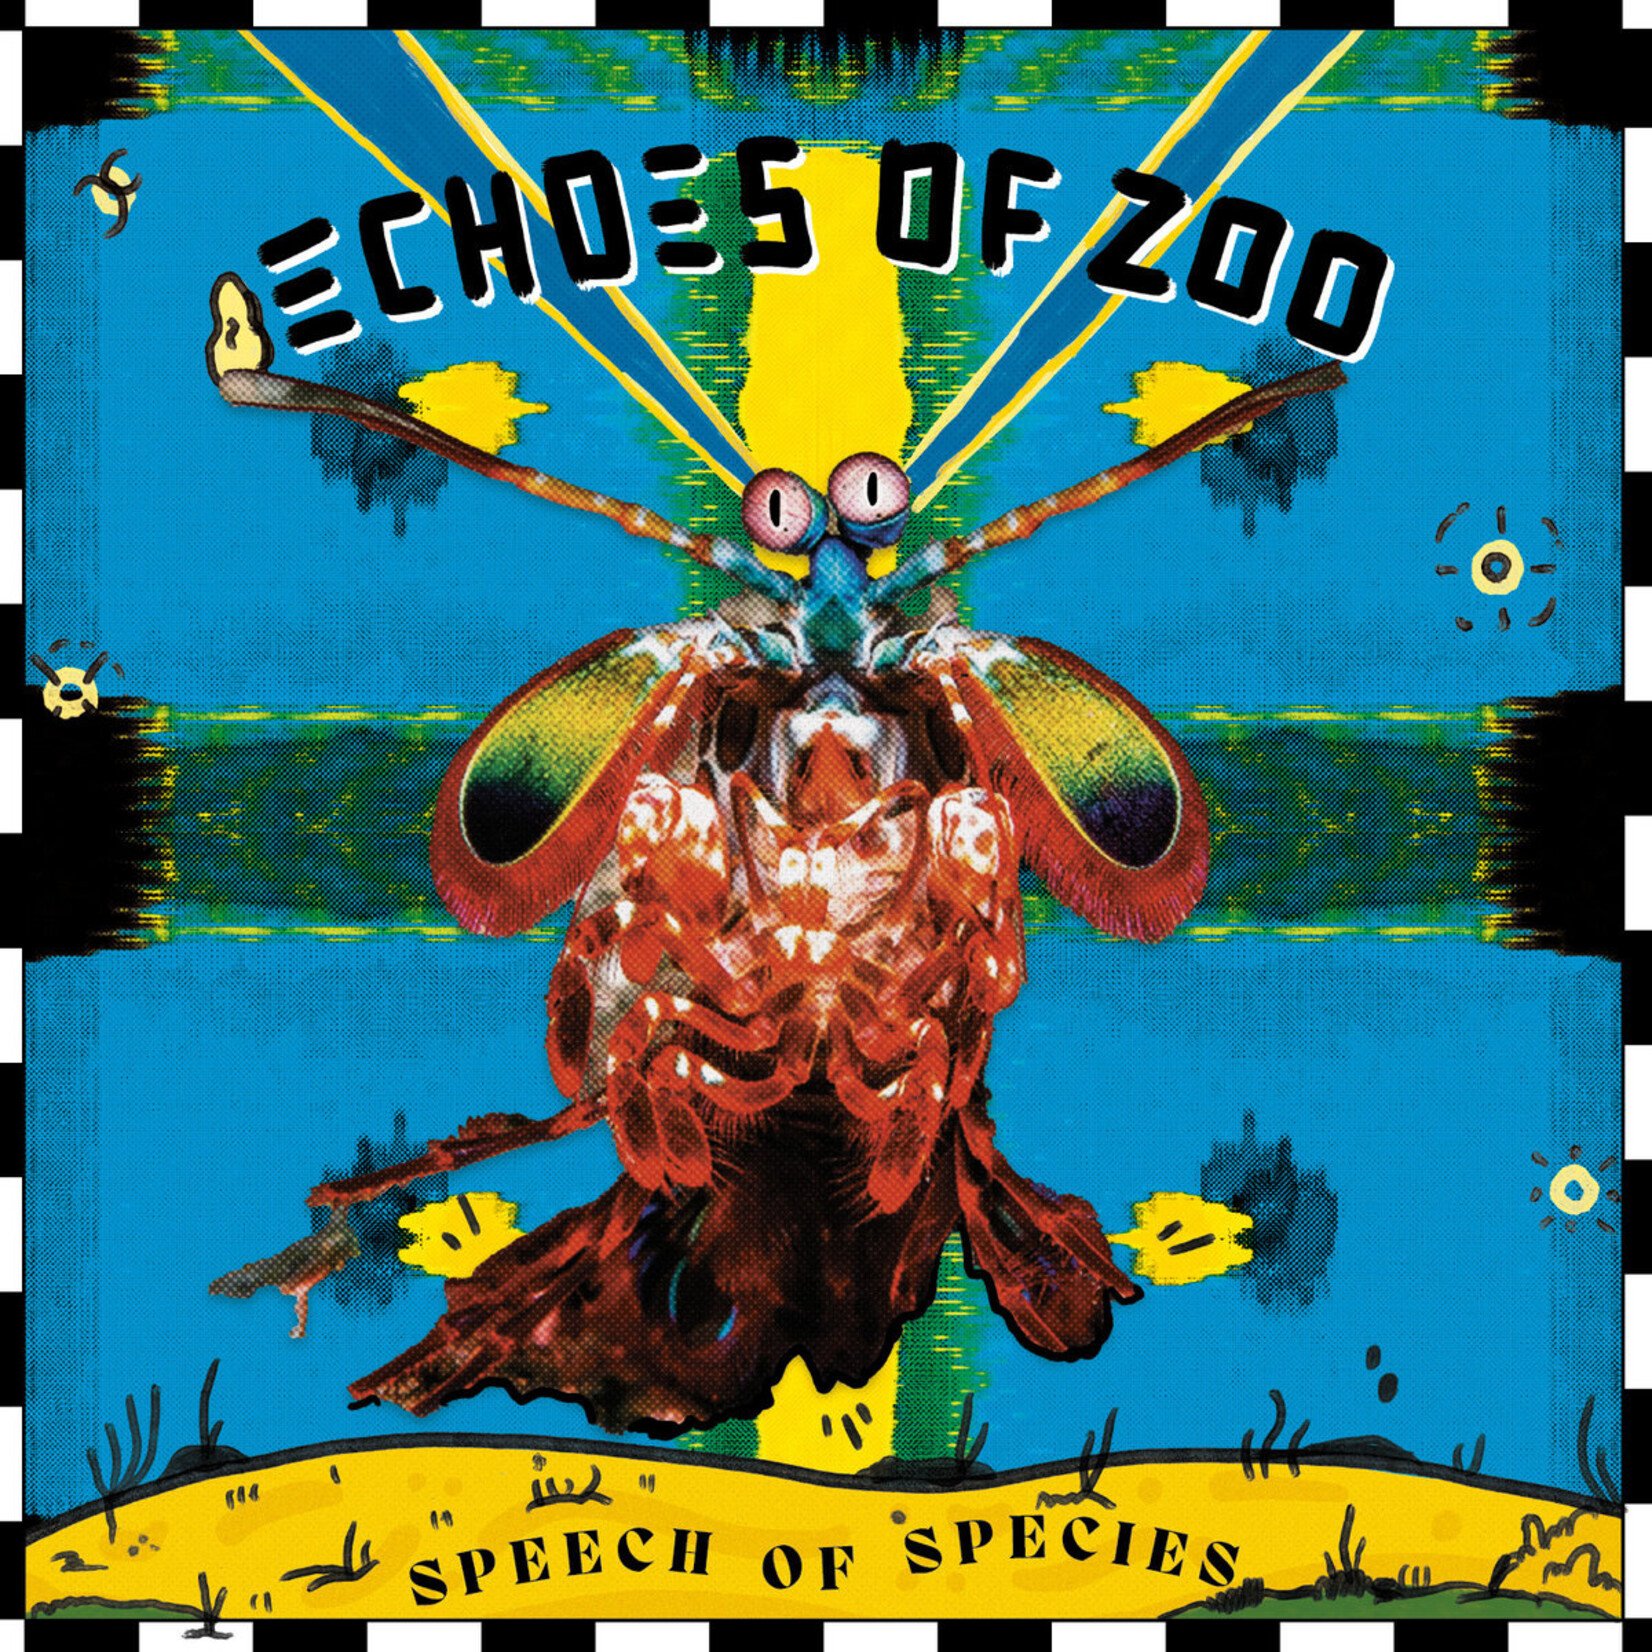 Echoes Of Zoo - Speech Of Species